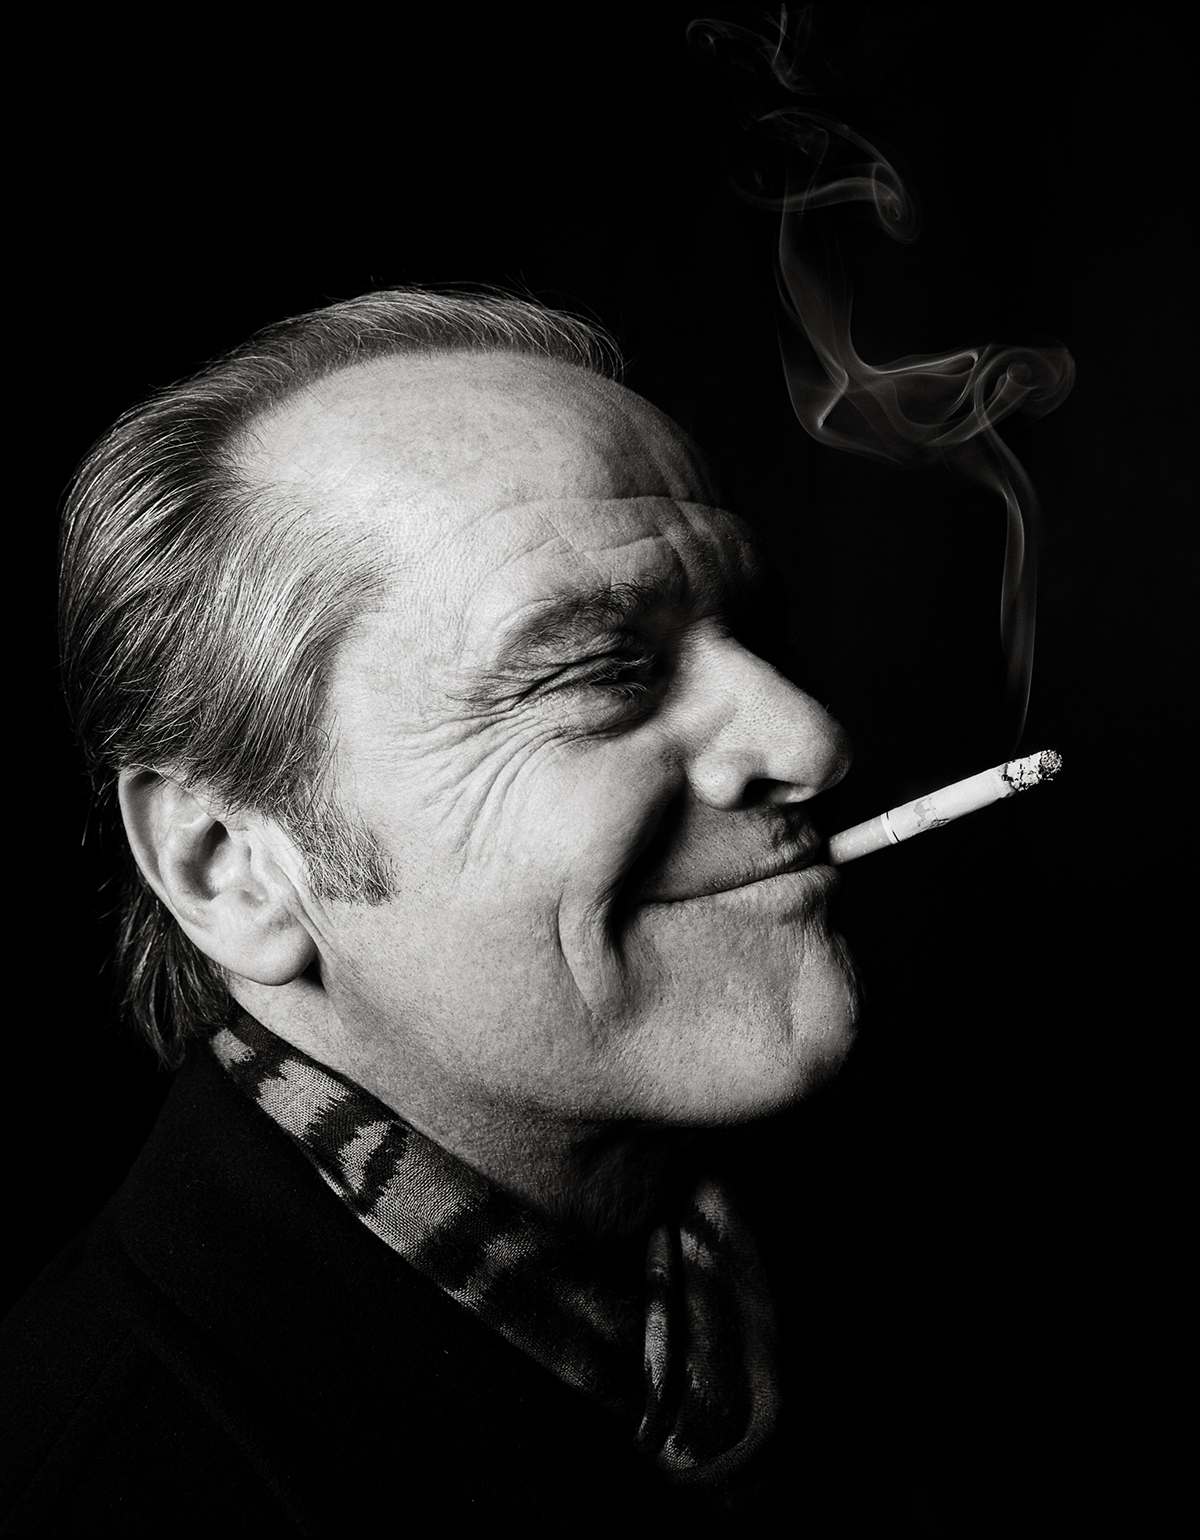 Jack Nicholson spoking a cigarette